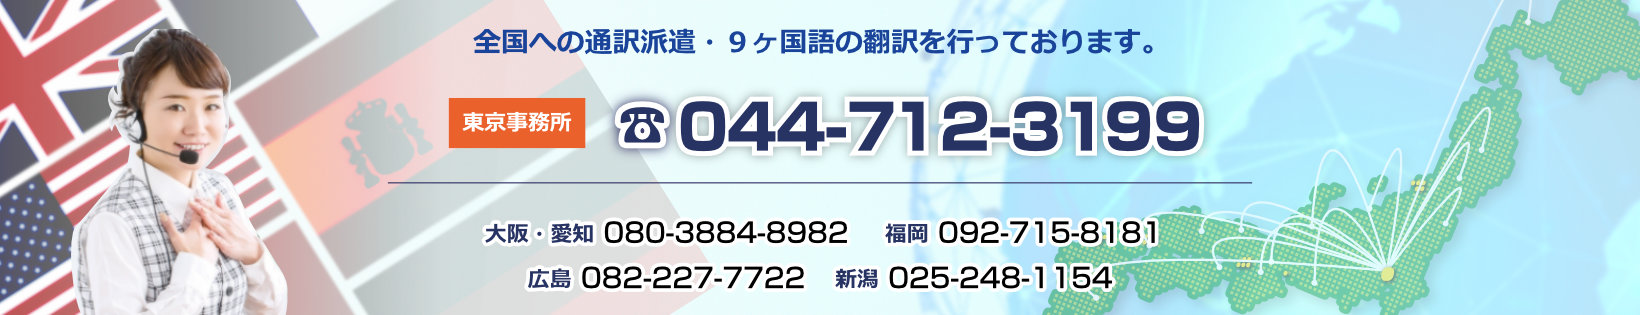 東京法人向け通訳事務所電話番号